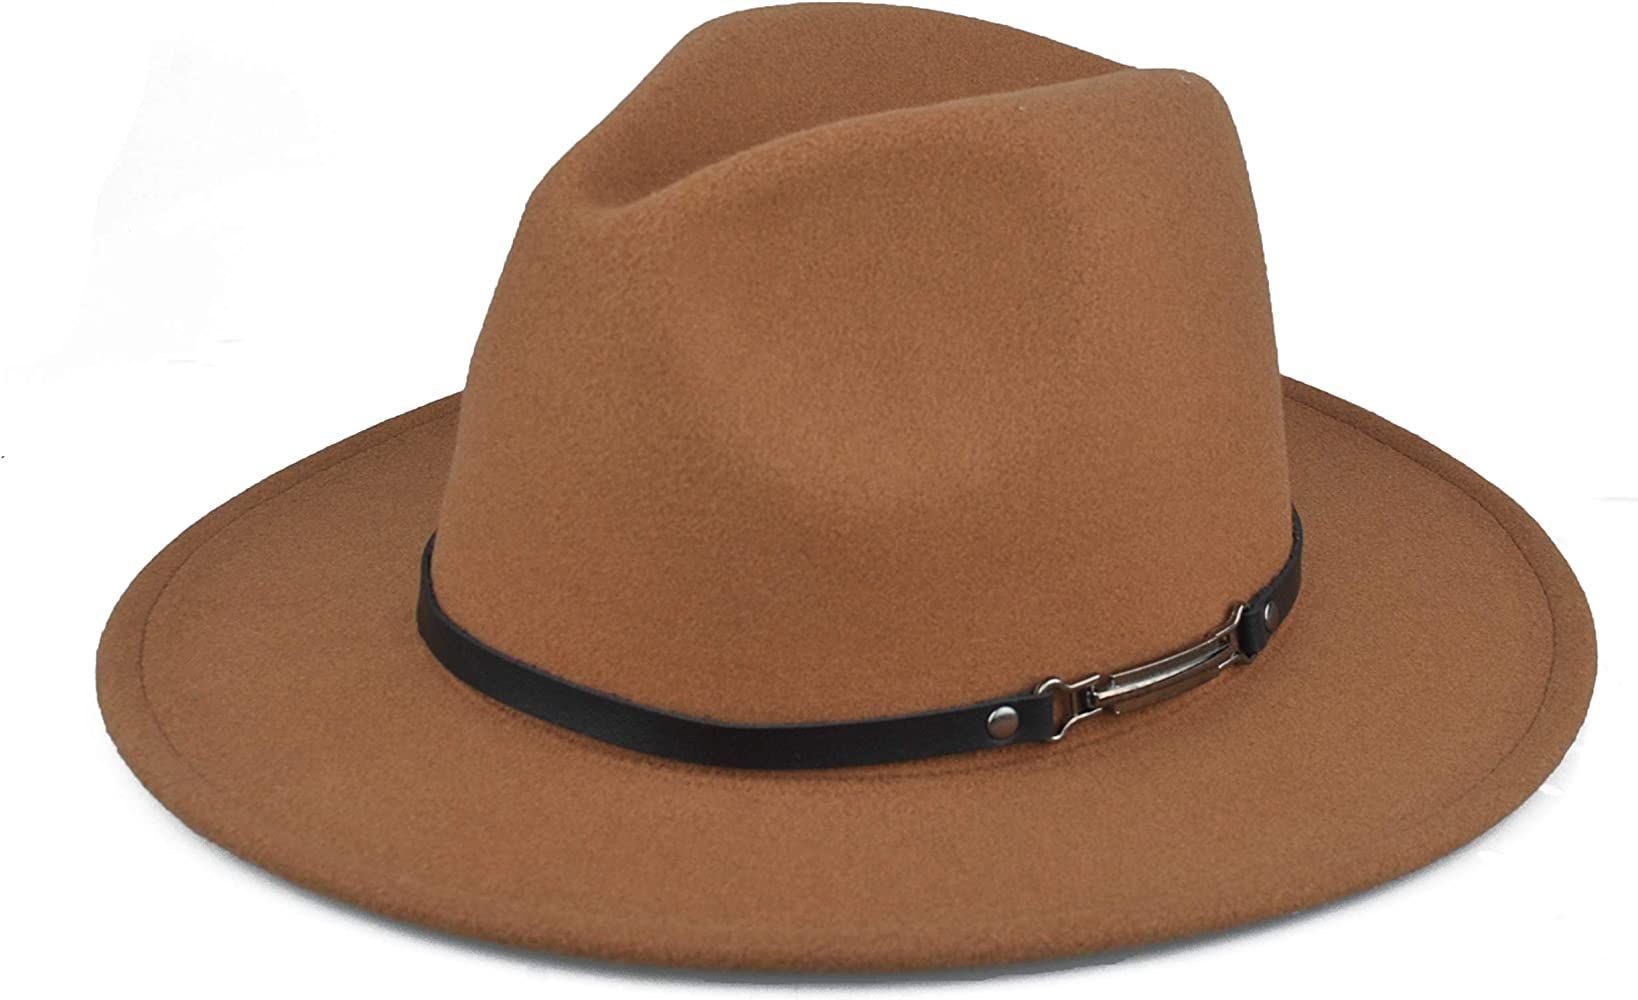 EINSKEY Womens Felt Fedora Hat, Wide Brim Panama Cowboy Hat Floppy Sun Hat for Beach Church | Amazon (US)